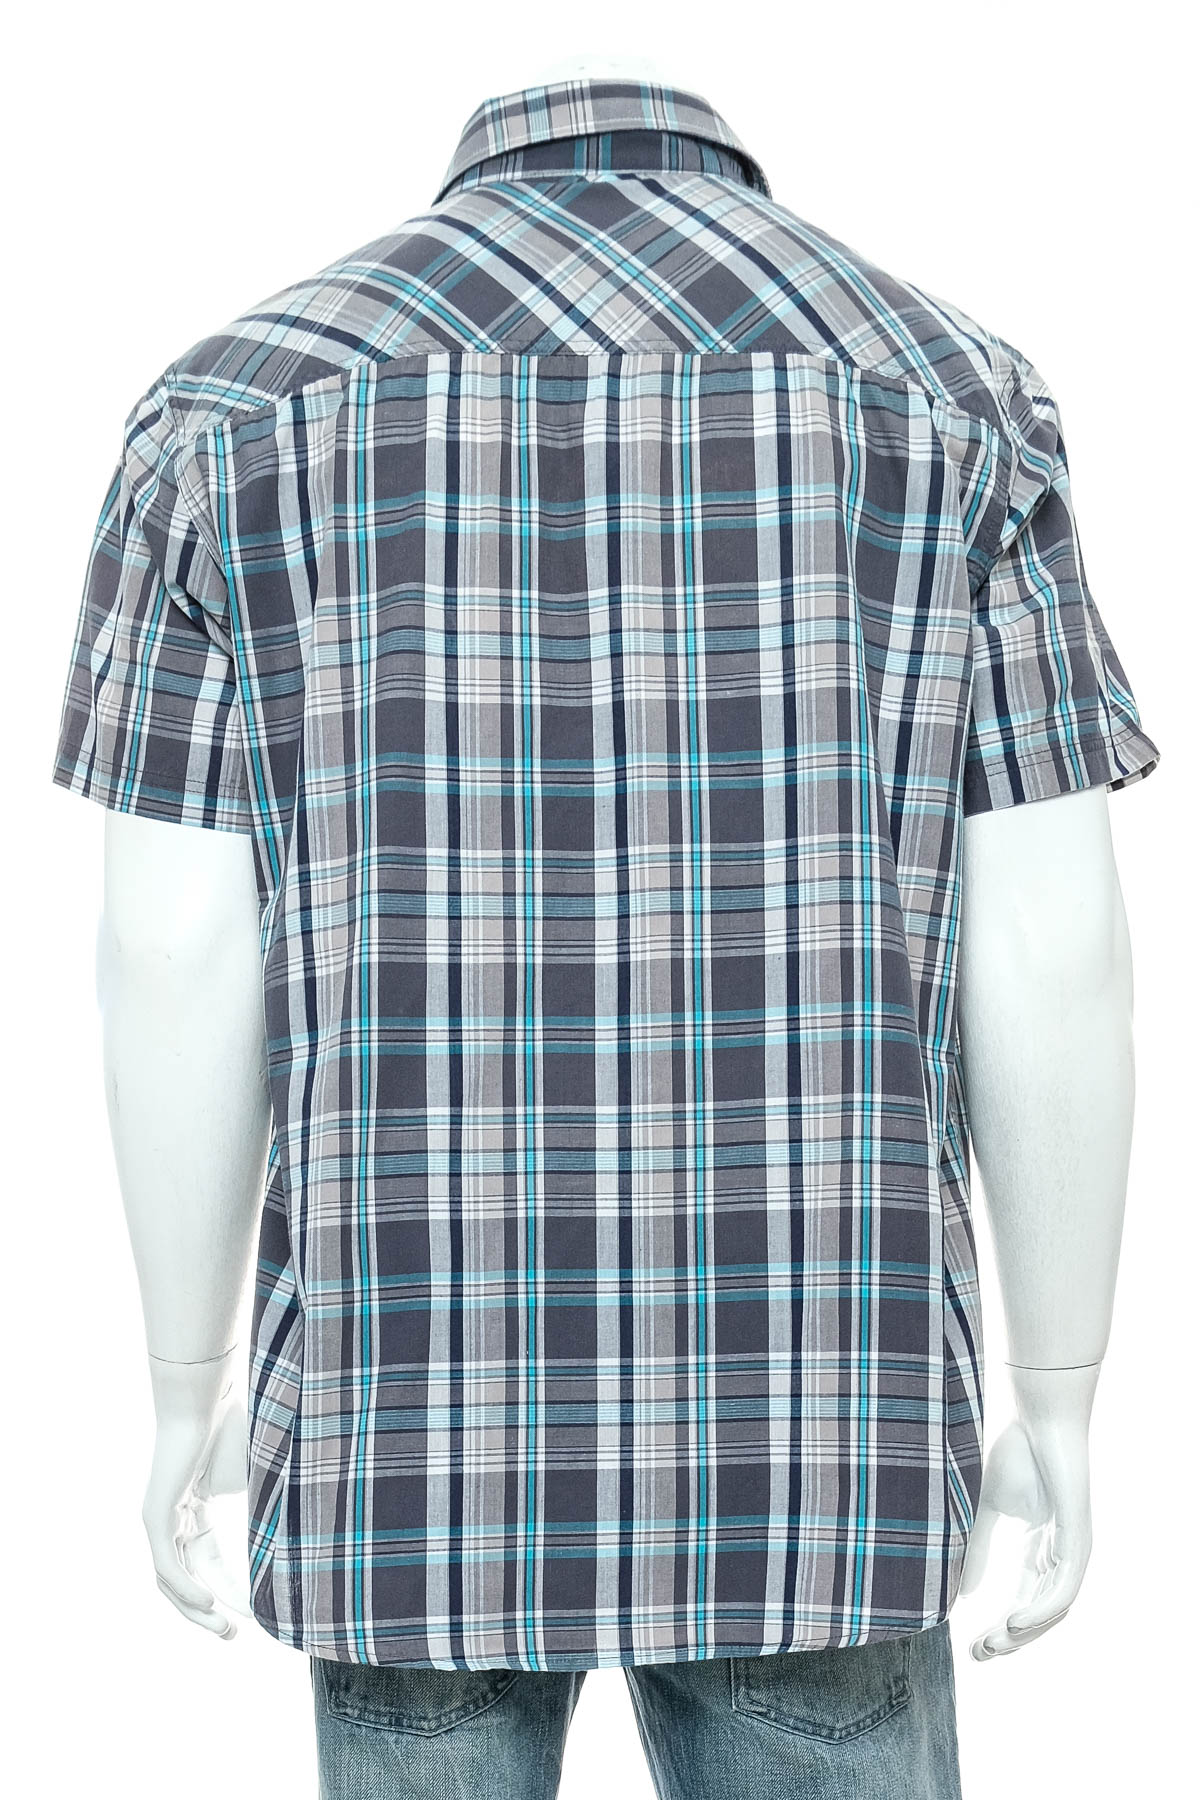 Ανδρικό πουκάμισο - REWARD - 1